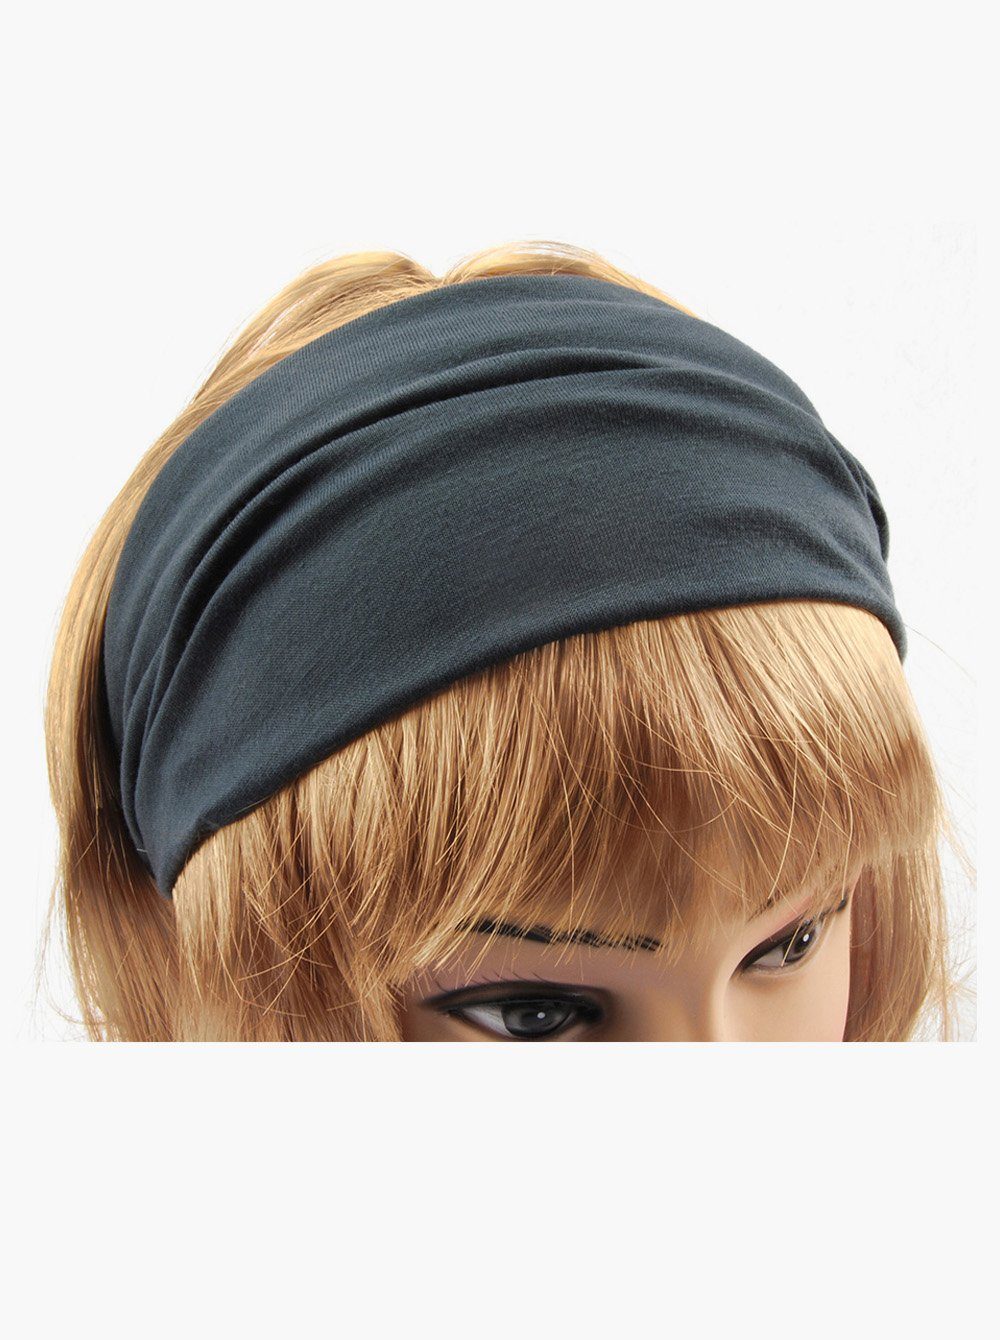 axy Haarband Damen Haarband Kopfband, Dunkelgrau Sport und Stirnband für Hairband Yoga